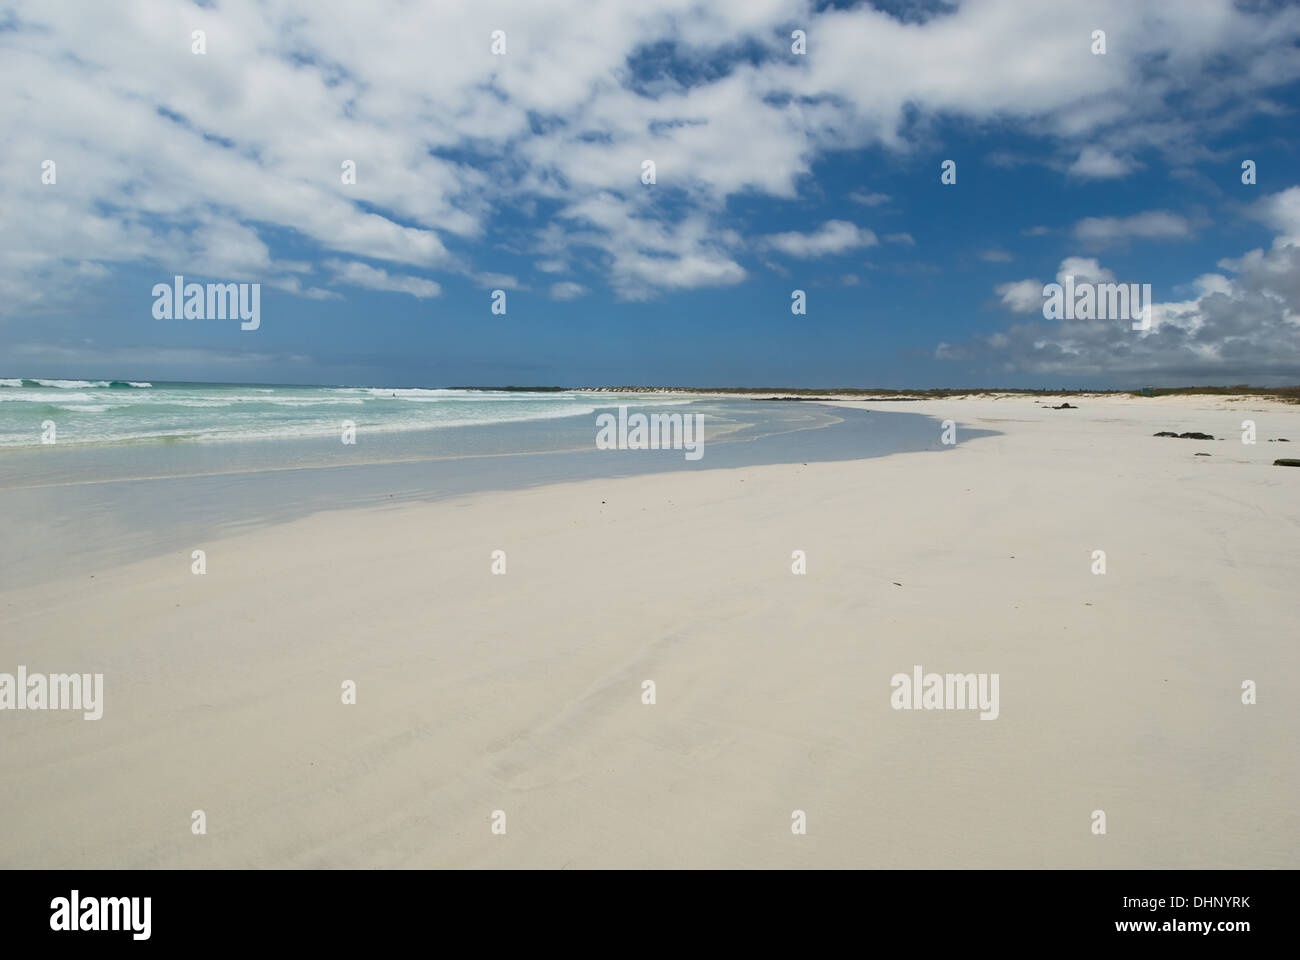 tortuga beach, galapagos islands, ecuador Stock Photo